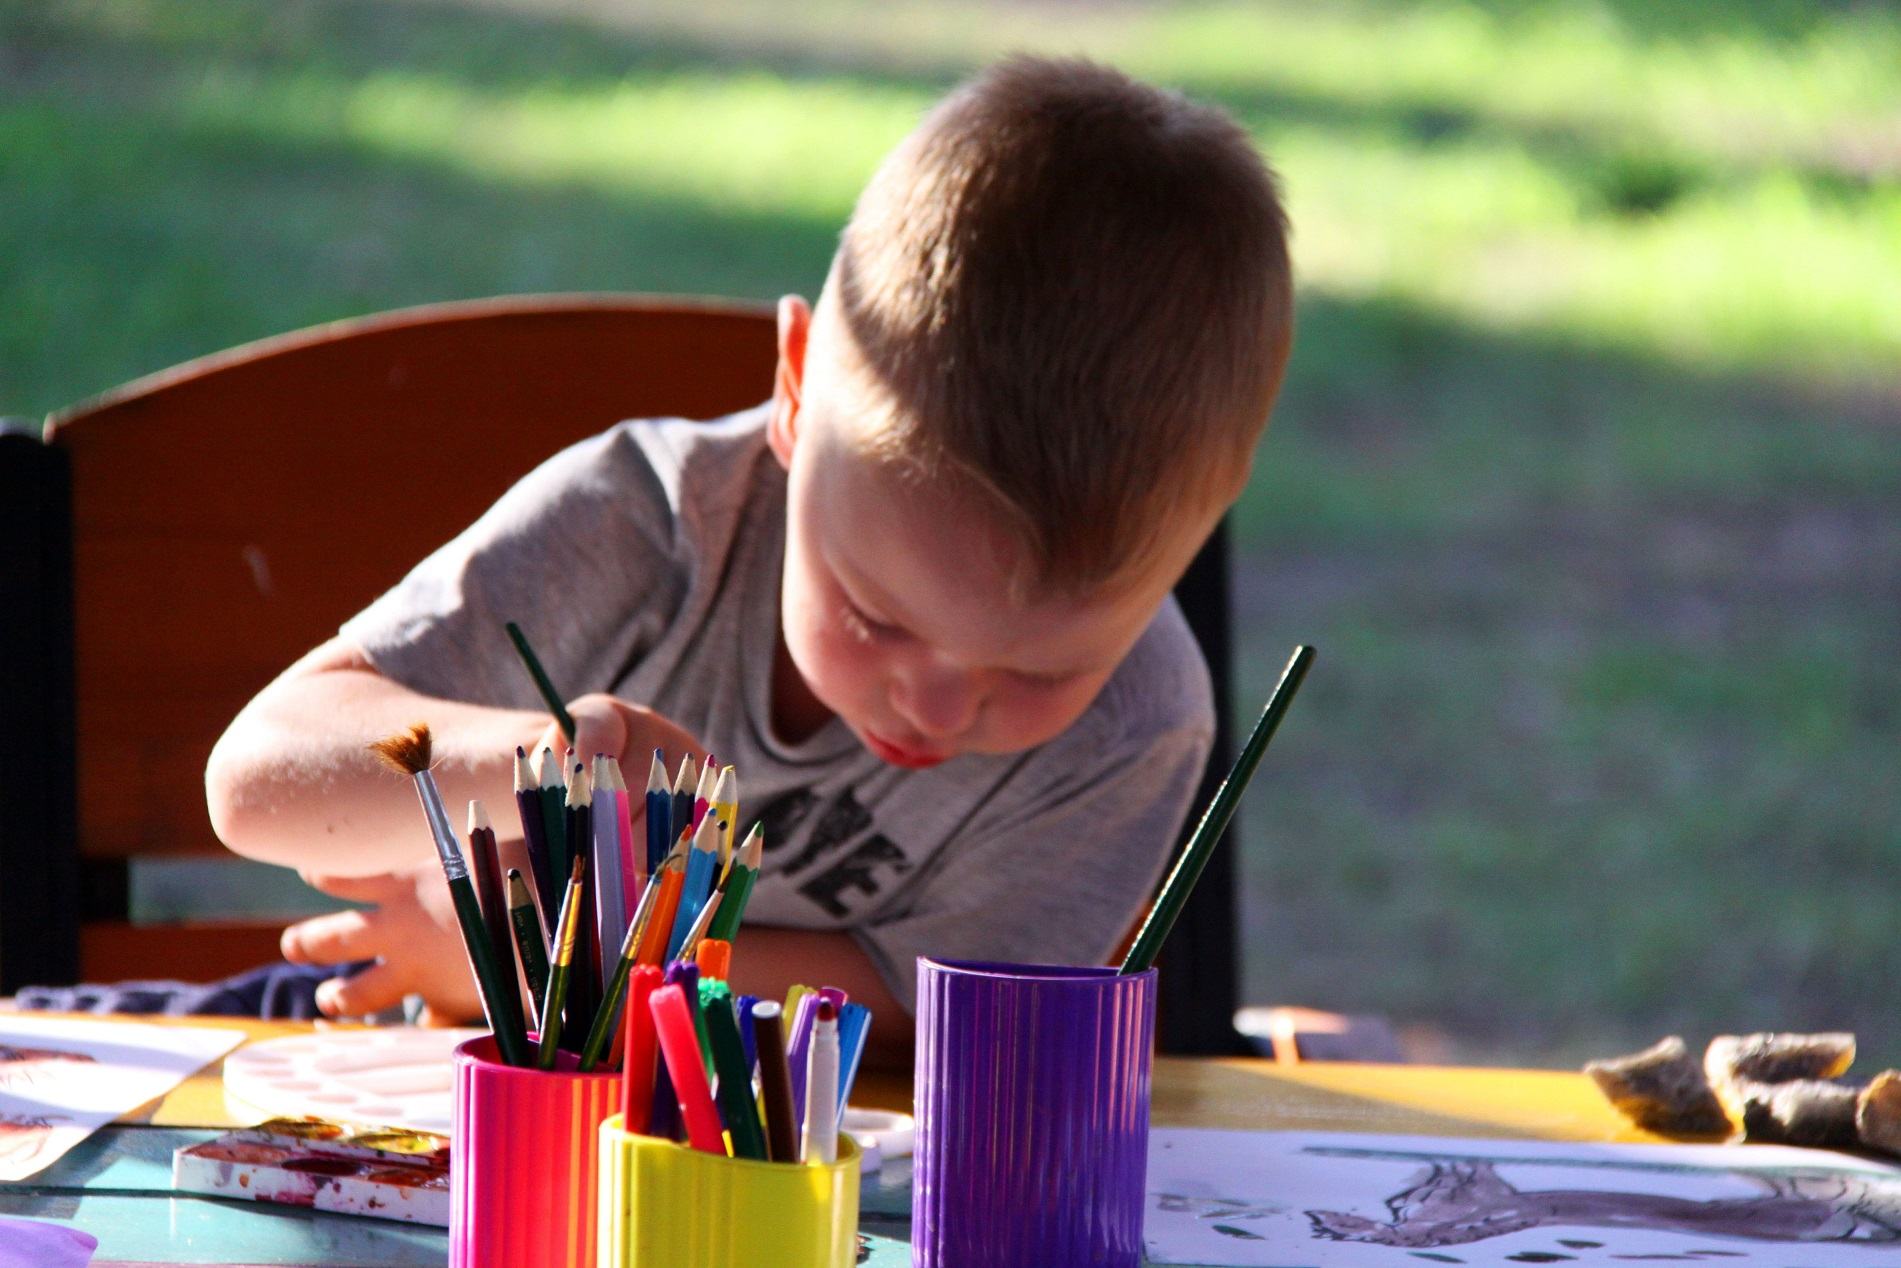 Ce inseamna desenele facute de copil? Culorile folosite sunt adevarate mesaje